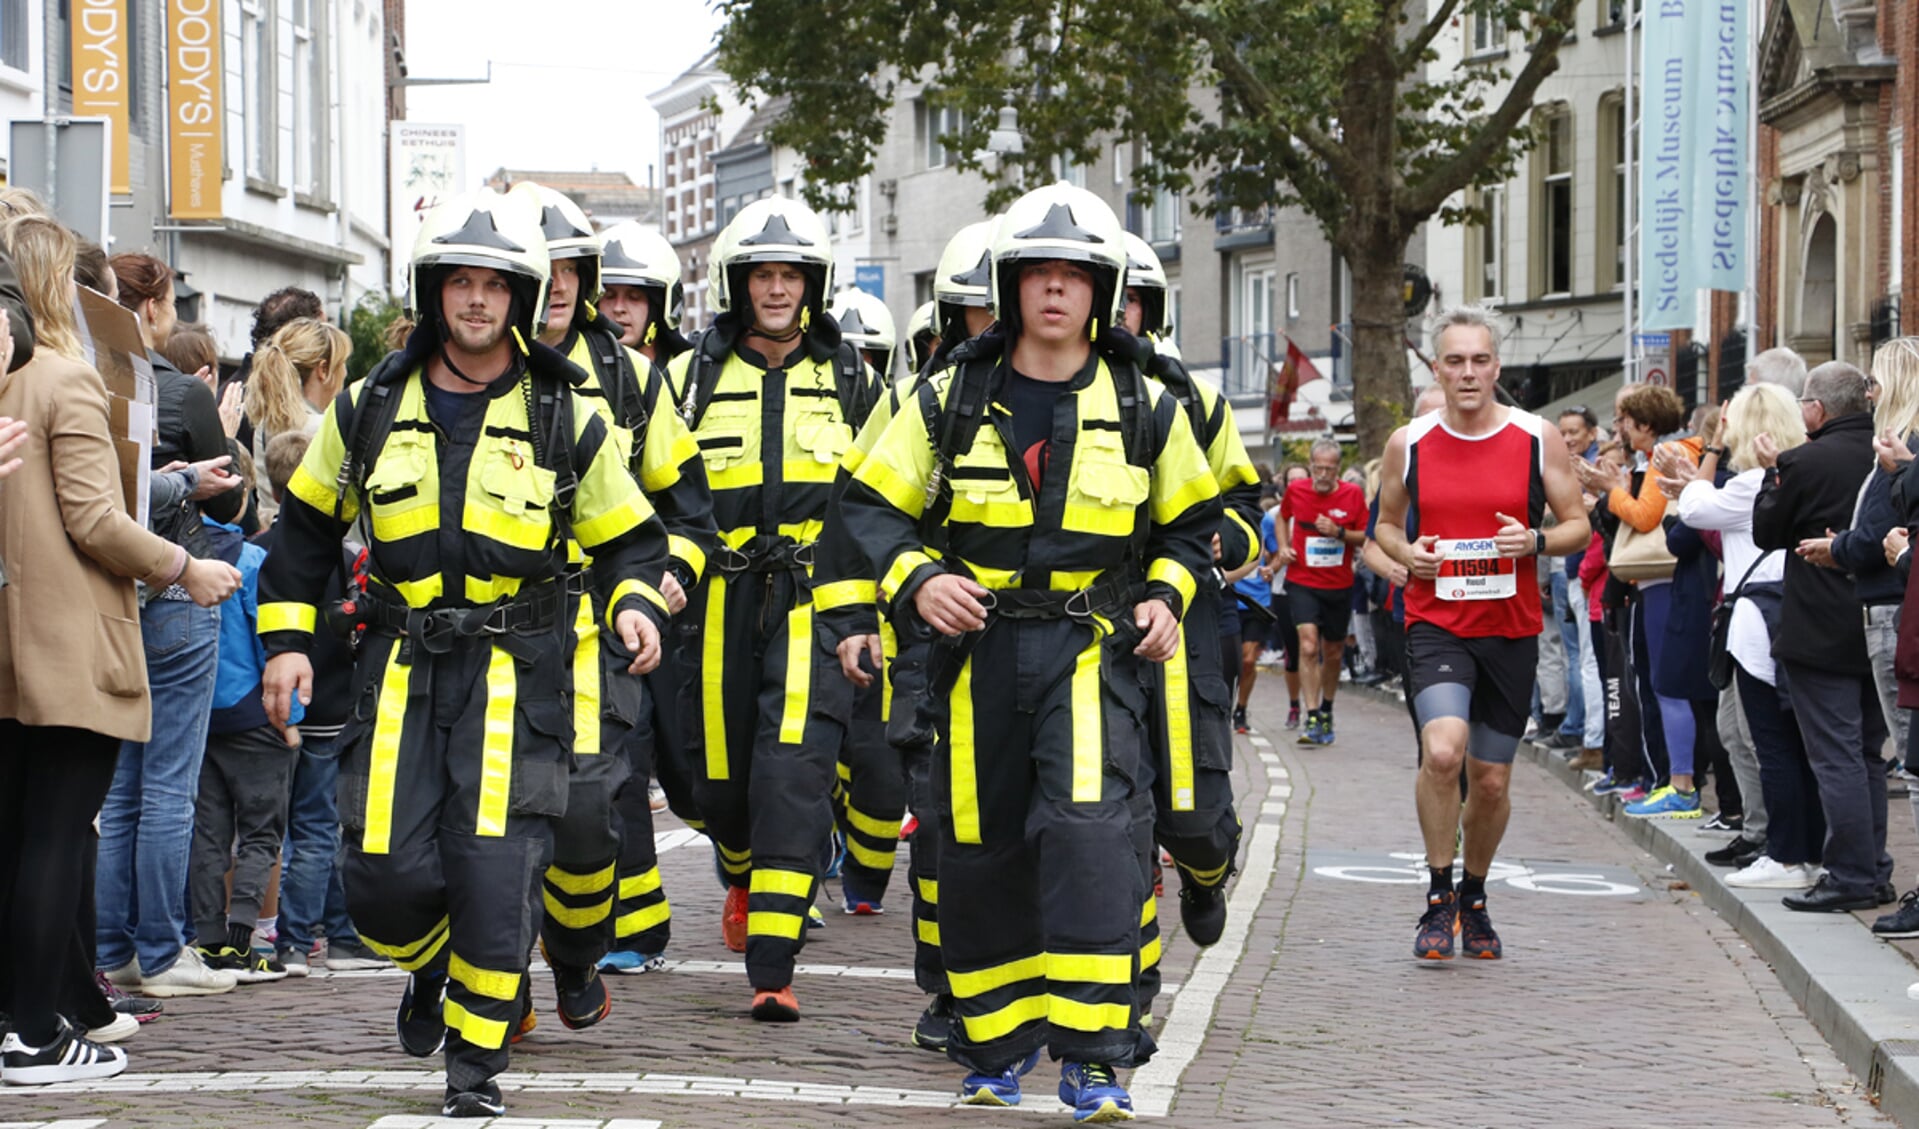 Een team van brandweer Midden- en Westbrabant heeft de tien kilometer gelopen tijdens de Singelloop 2017.